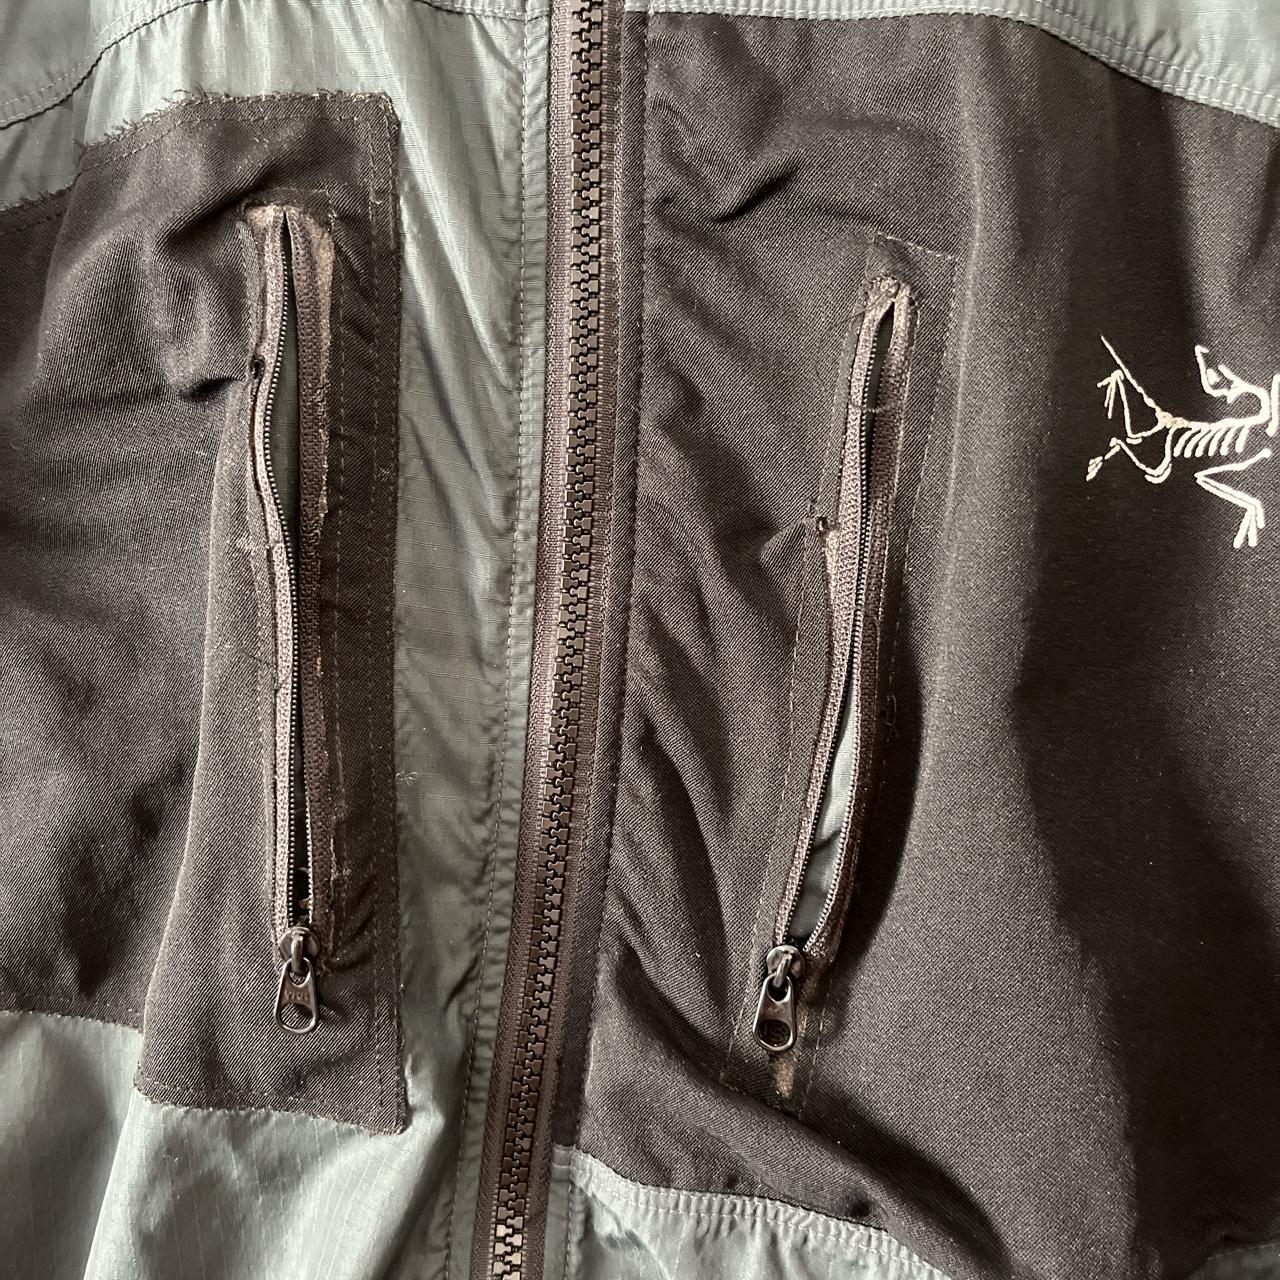 Vintage Arc’teryx 2001 Tau jacket. Pockets have been... - Depop